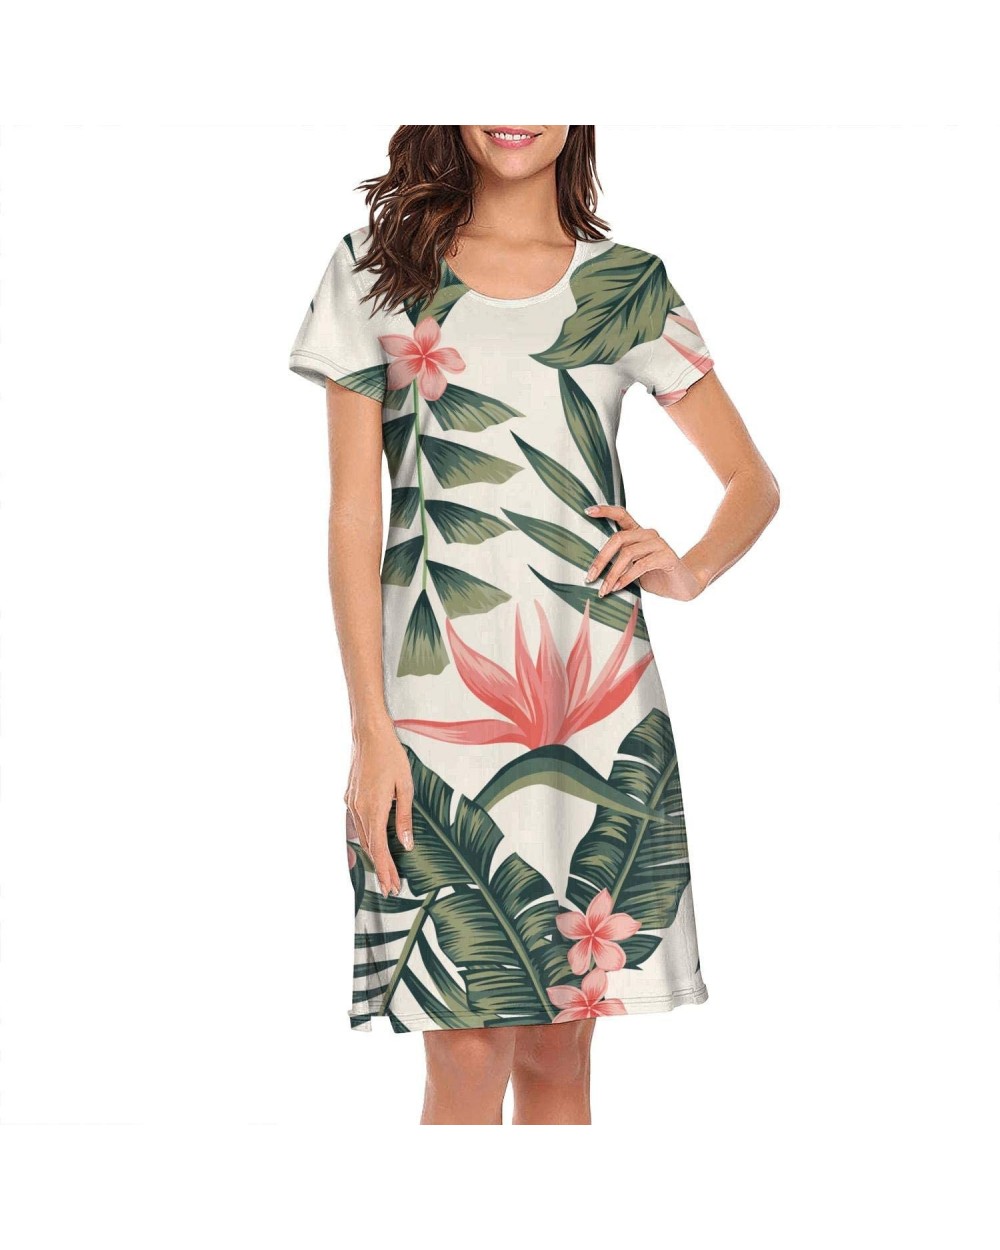 Womens Sleepwear Tropical Floral Hawaiian Exotic Cute Nightgown Plaid Nightshirt Long Sleep Dress Nightwear - Tropical Floral...